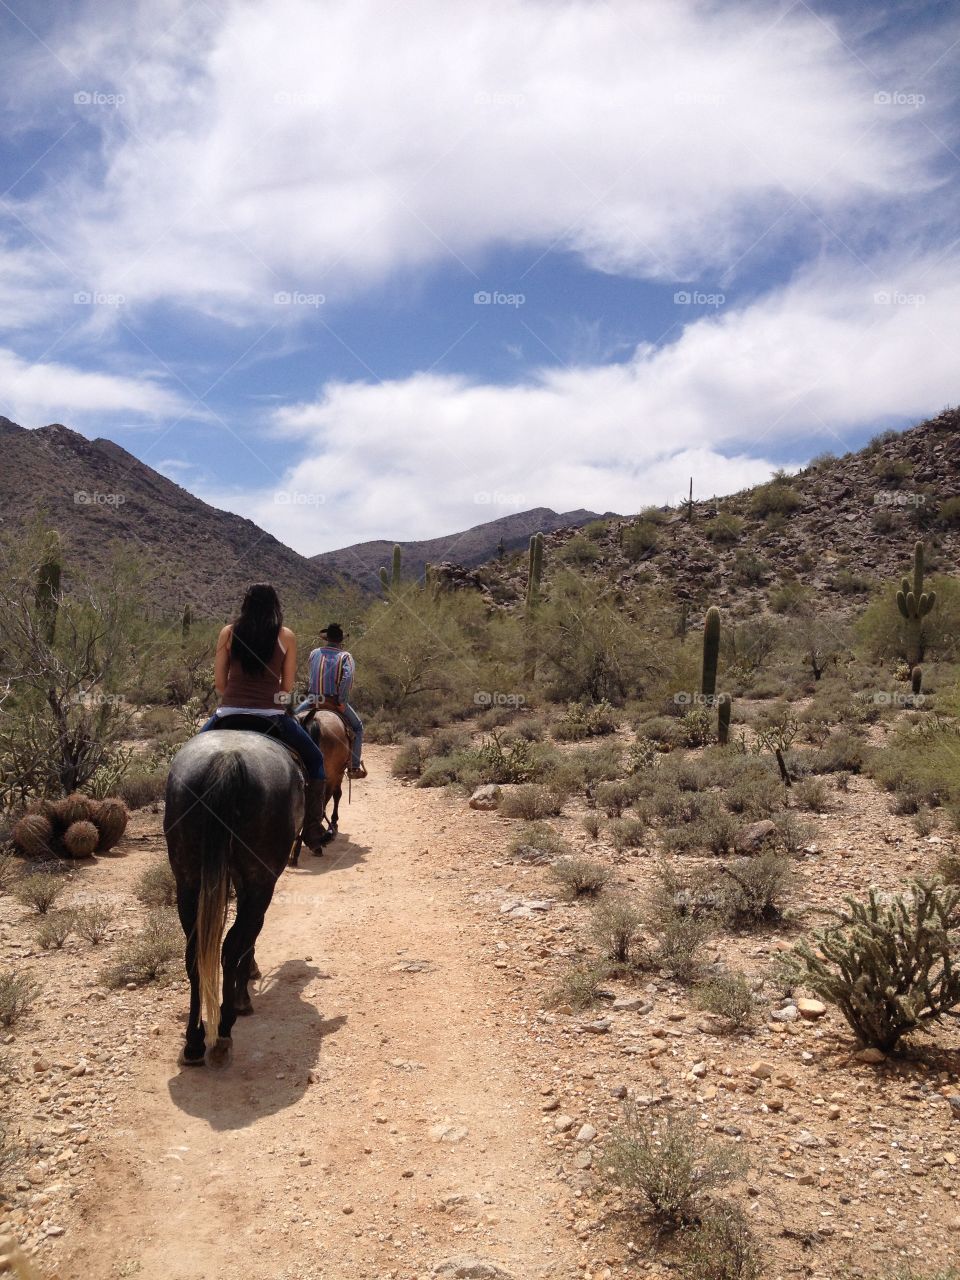 Desert trails. Horseback riding in the White Tank Mt. Regional Park.